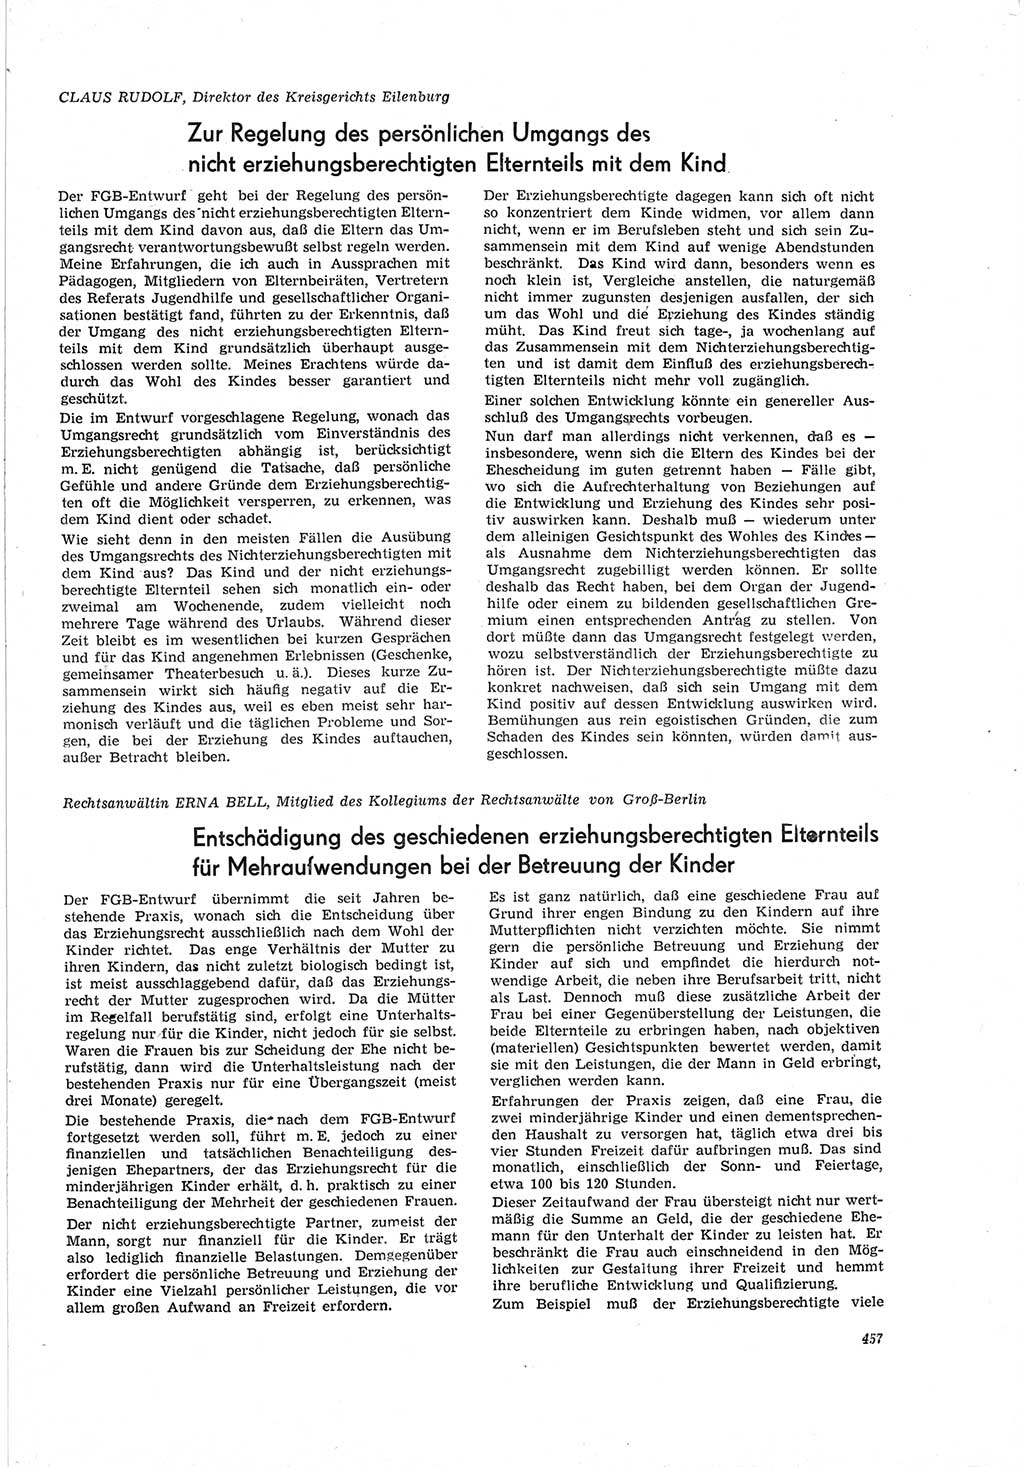 Neue Justiz (NJ), Zeitschrift für Recht und Rechtswissenschaft [Deutsche Demokratische Republik (DDR)], 19. Jahrgang 1965, Seite 457 (NJ DDR 1965, S. 457)